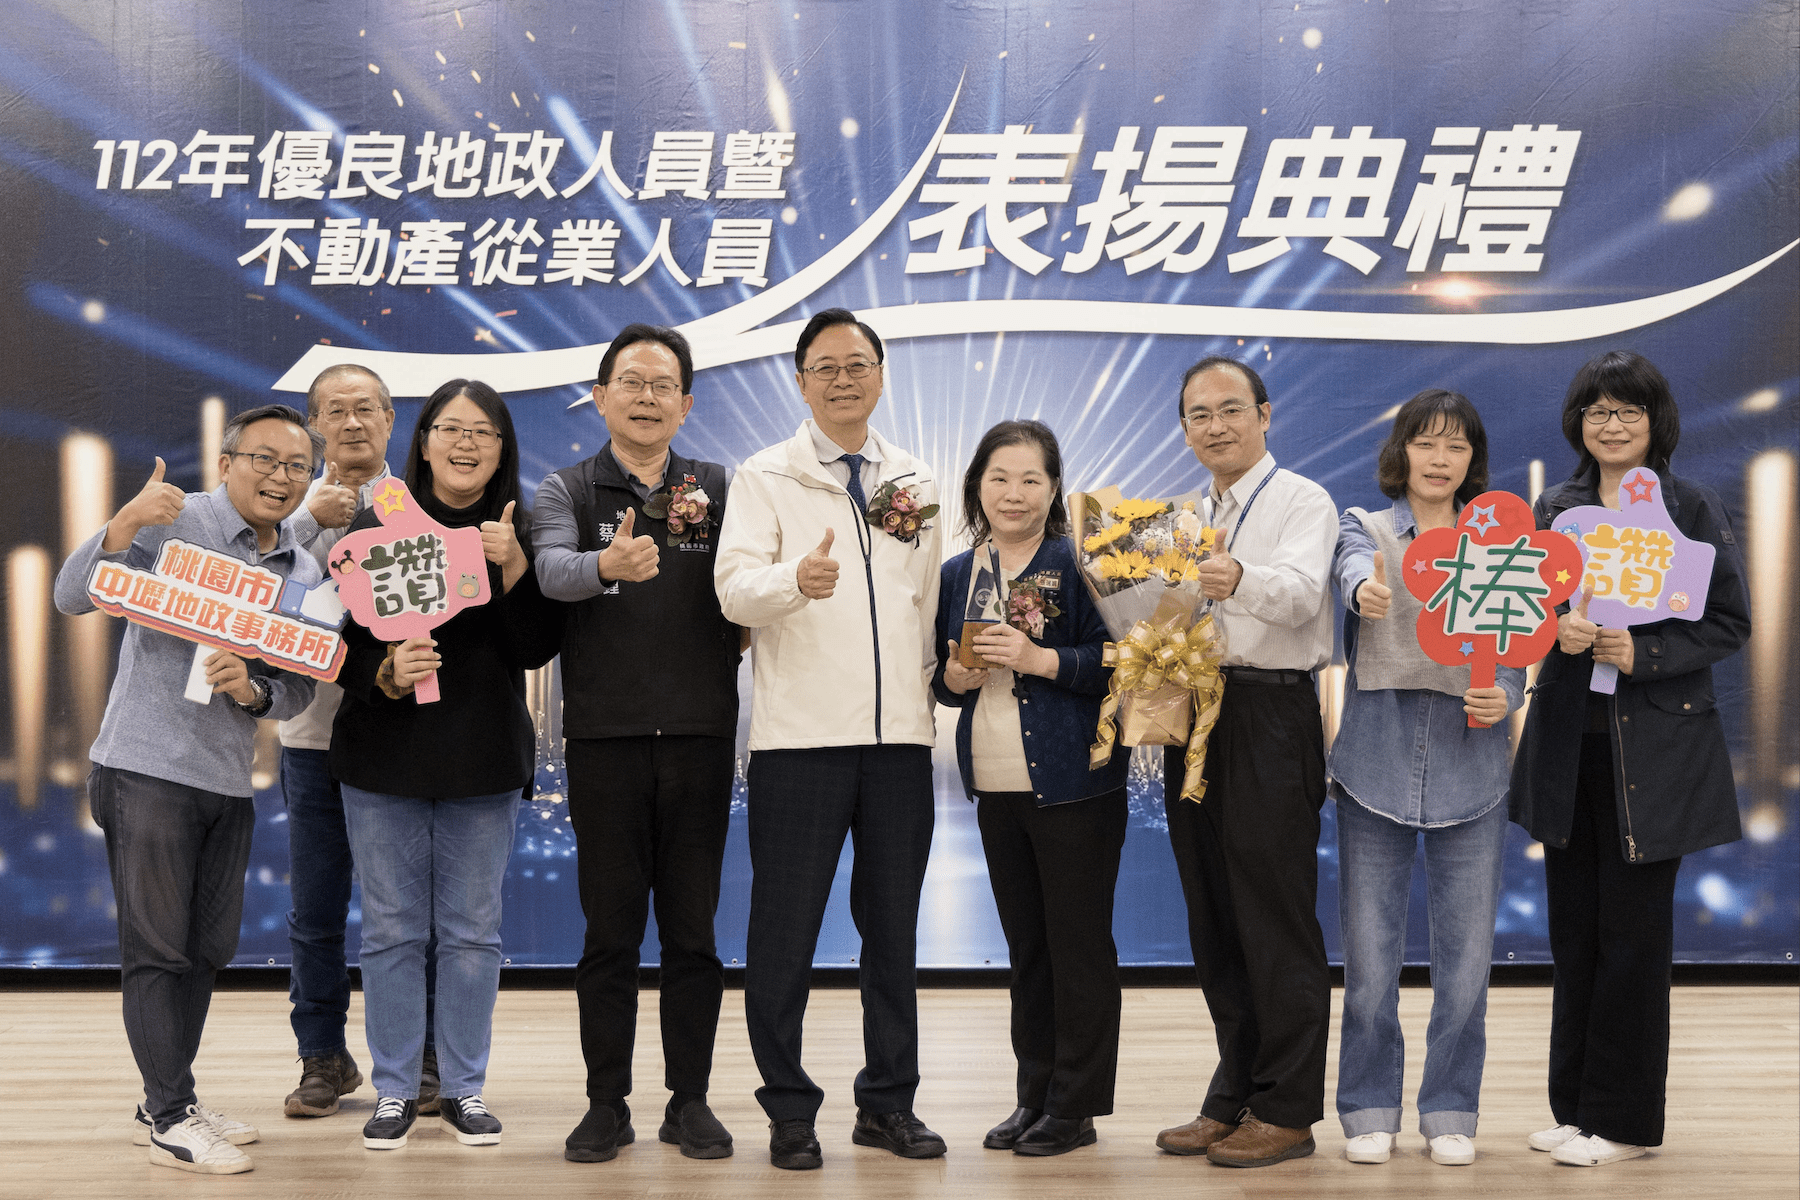 桃園打造宜居城市 地政人員表現卓越榮獲表揚 - 早安台灣新聞 | Morning Taiwan News